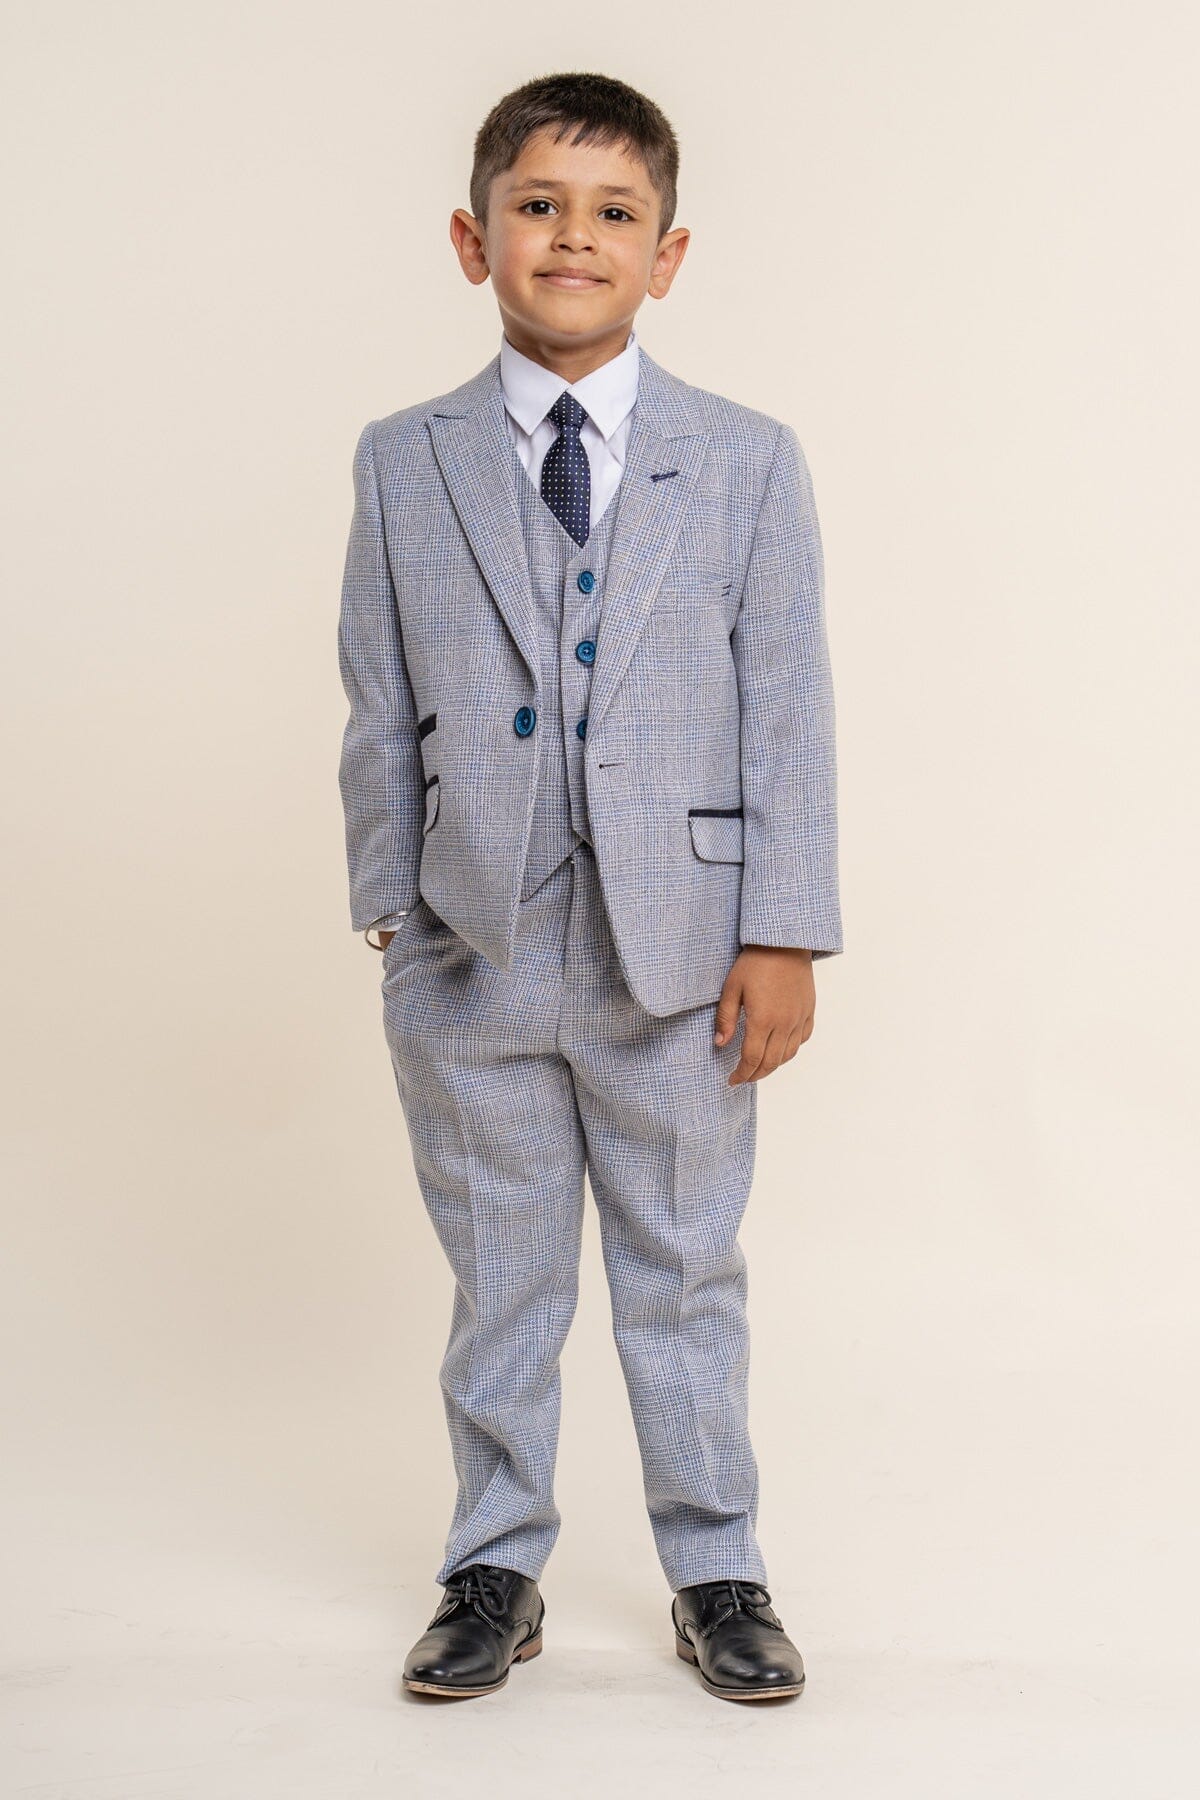 Caridi Sky Boys 3 Piece Suit - Childrenswear - 1 